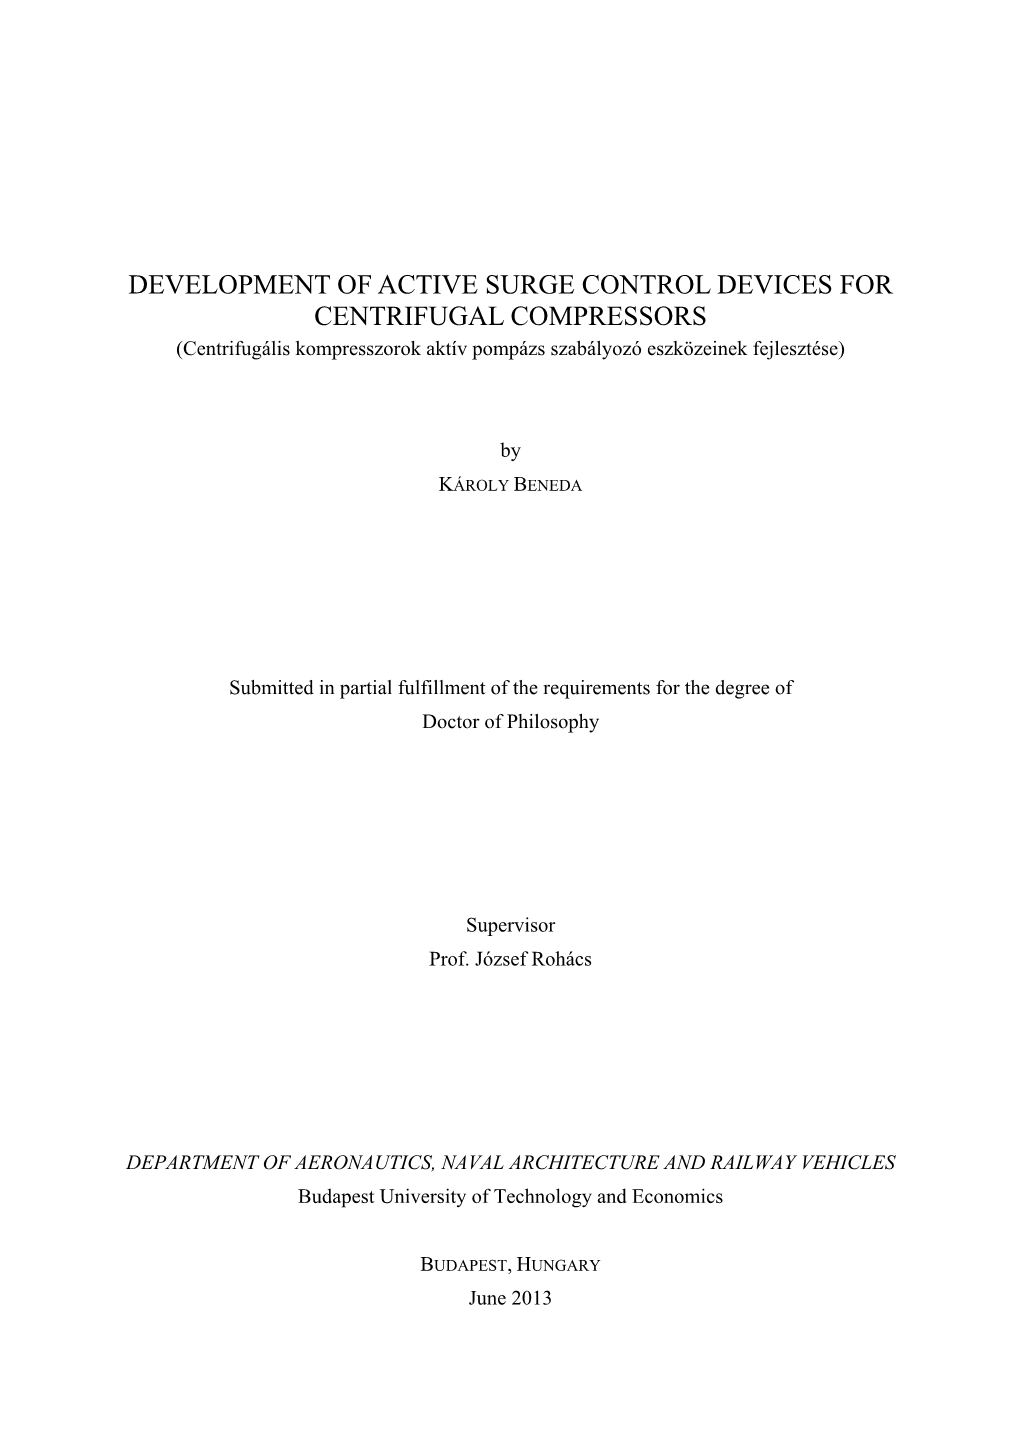 DEVELOPMENT of ACTIVE SURGE CONTROL DEVICES for CENTRIFUGAL COMPRESSORS (Centrifugális Kompresszorok Aktív Pompázs Szabályozó Eszközeinek Fejlesztése)